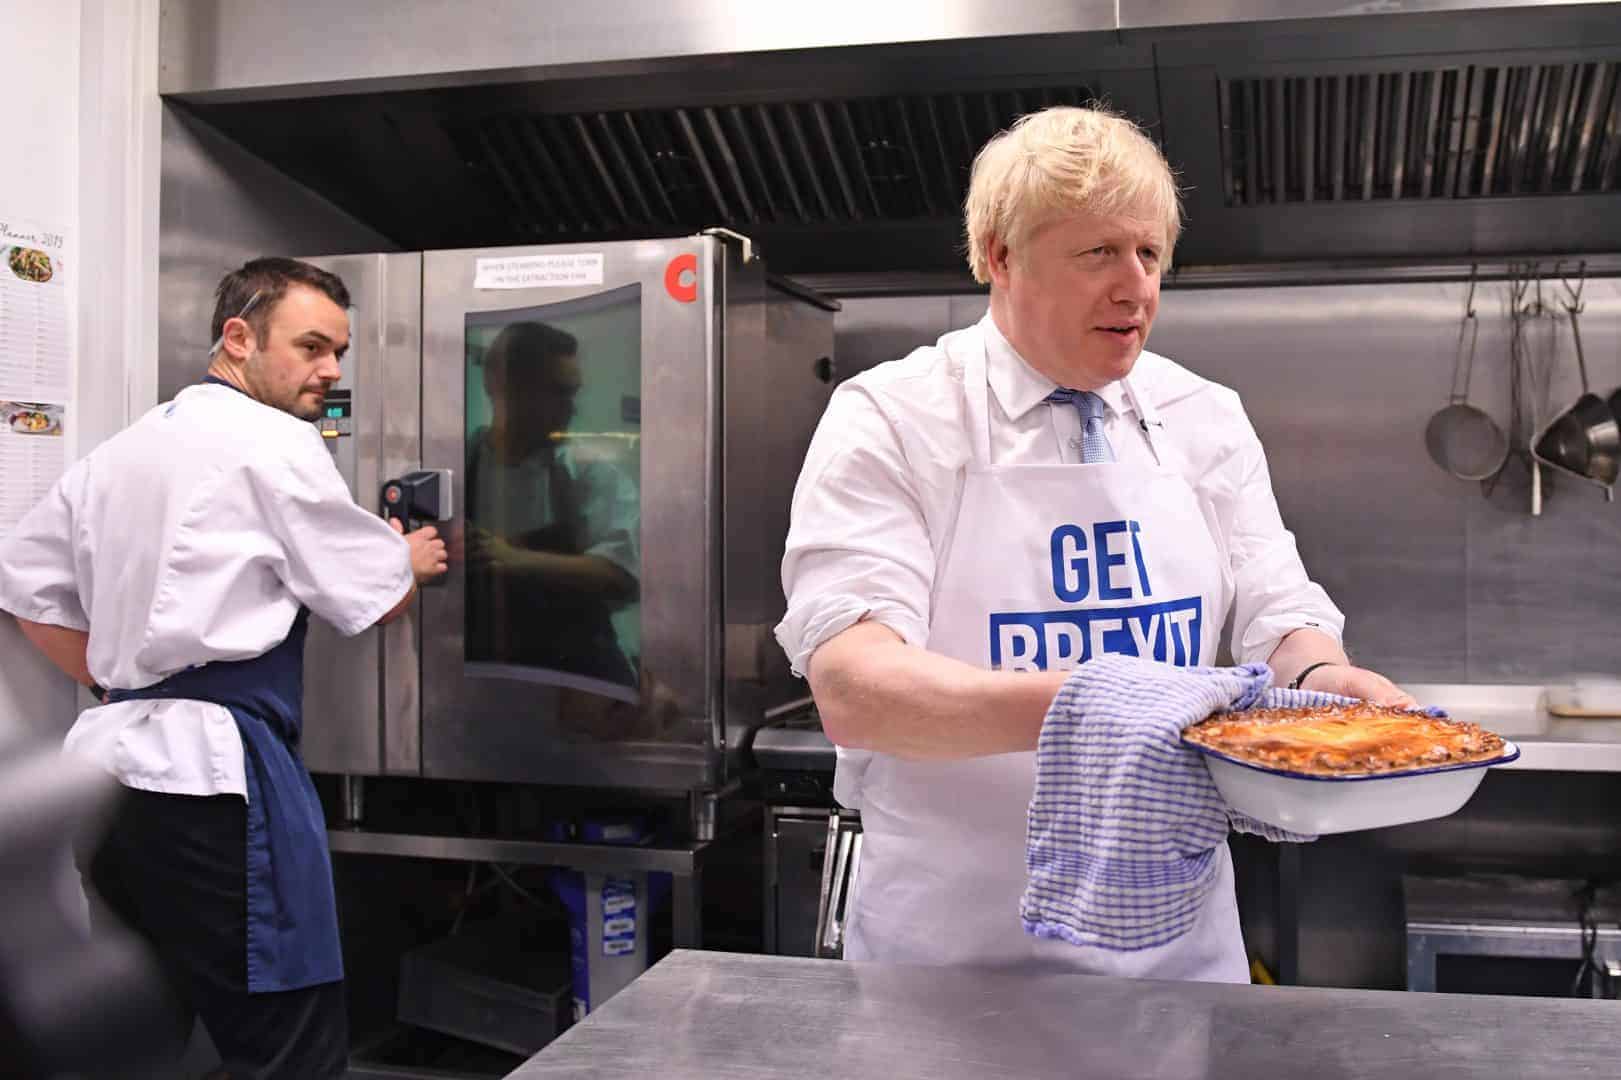 Leak reveals ‘oven-ready Brexit’ lie: Johnson’s 2020 deadline ‘unrealistic’ explains Barnier